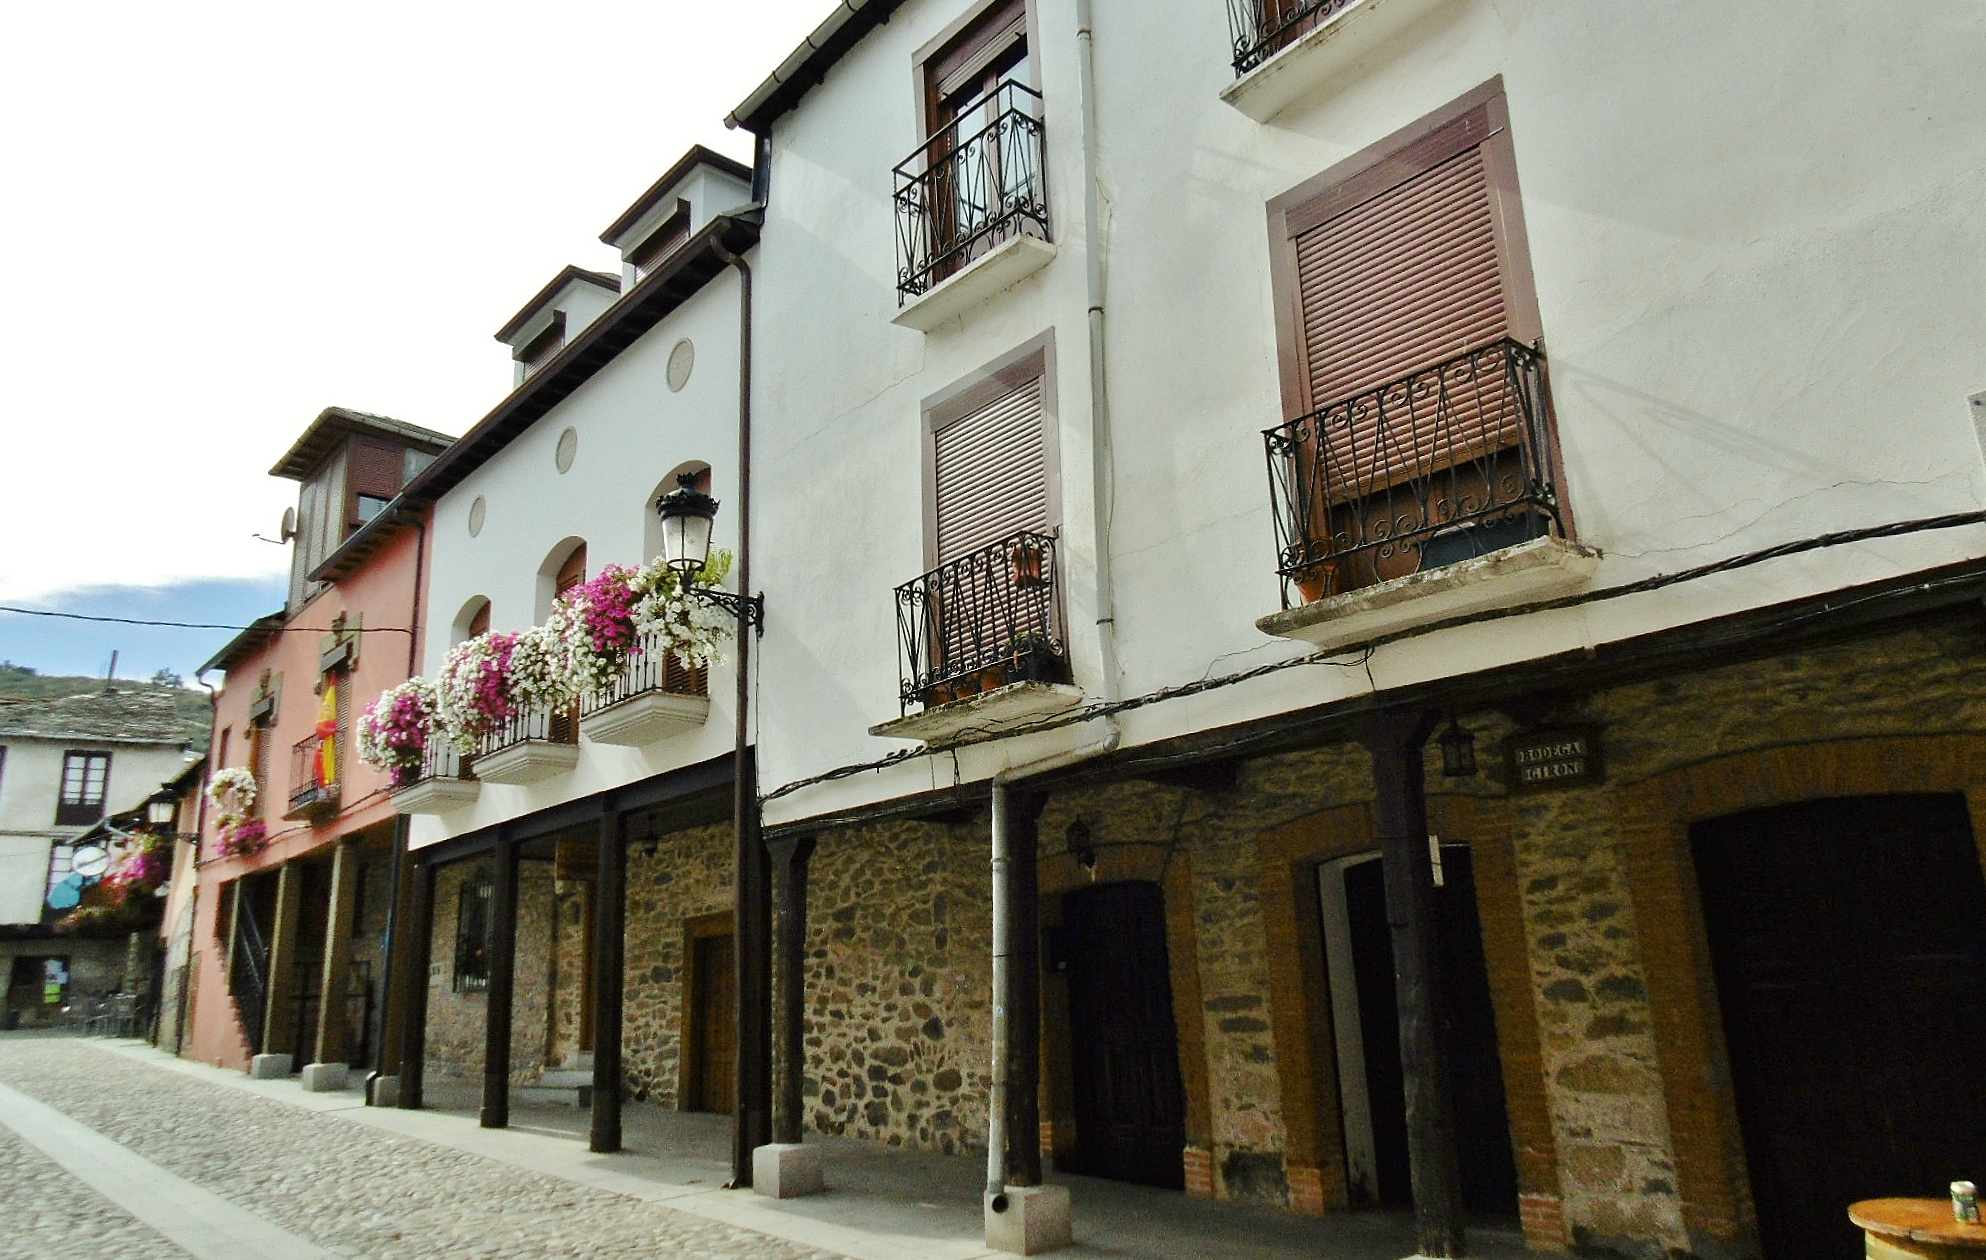 Foto: Centro histórico - Molinaseca (León), España